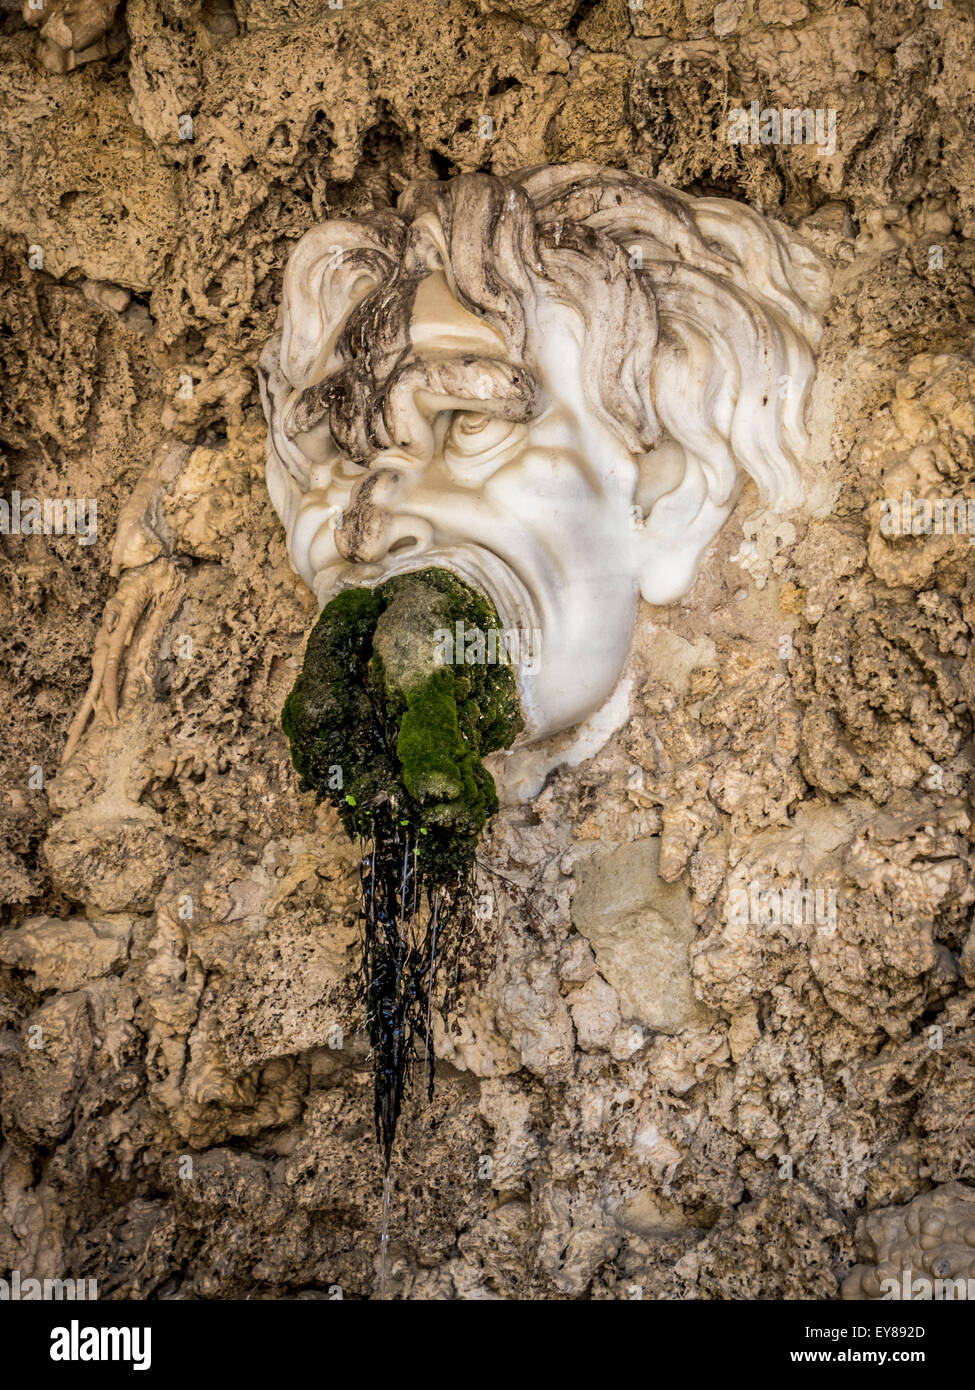 Face grotesque avec des mousses farcies dans sa bouche, dans la grotte d'Adam et Eve, dans les jardins de Boboli, Florence. Italie Banque D'Images